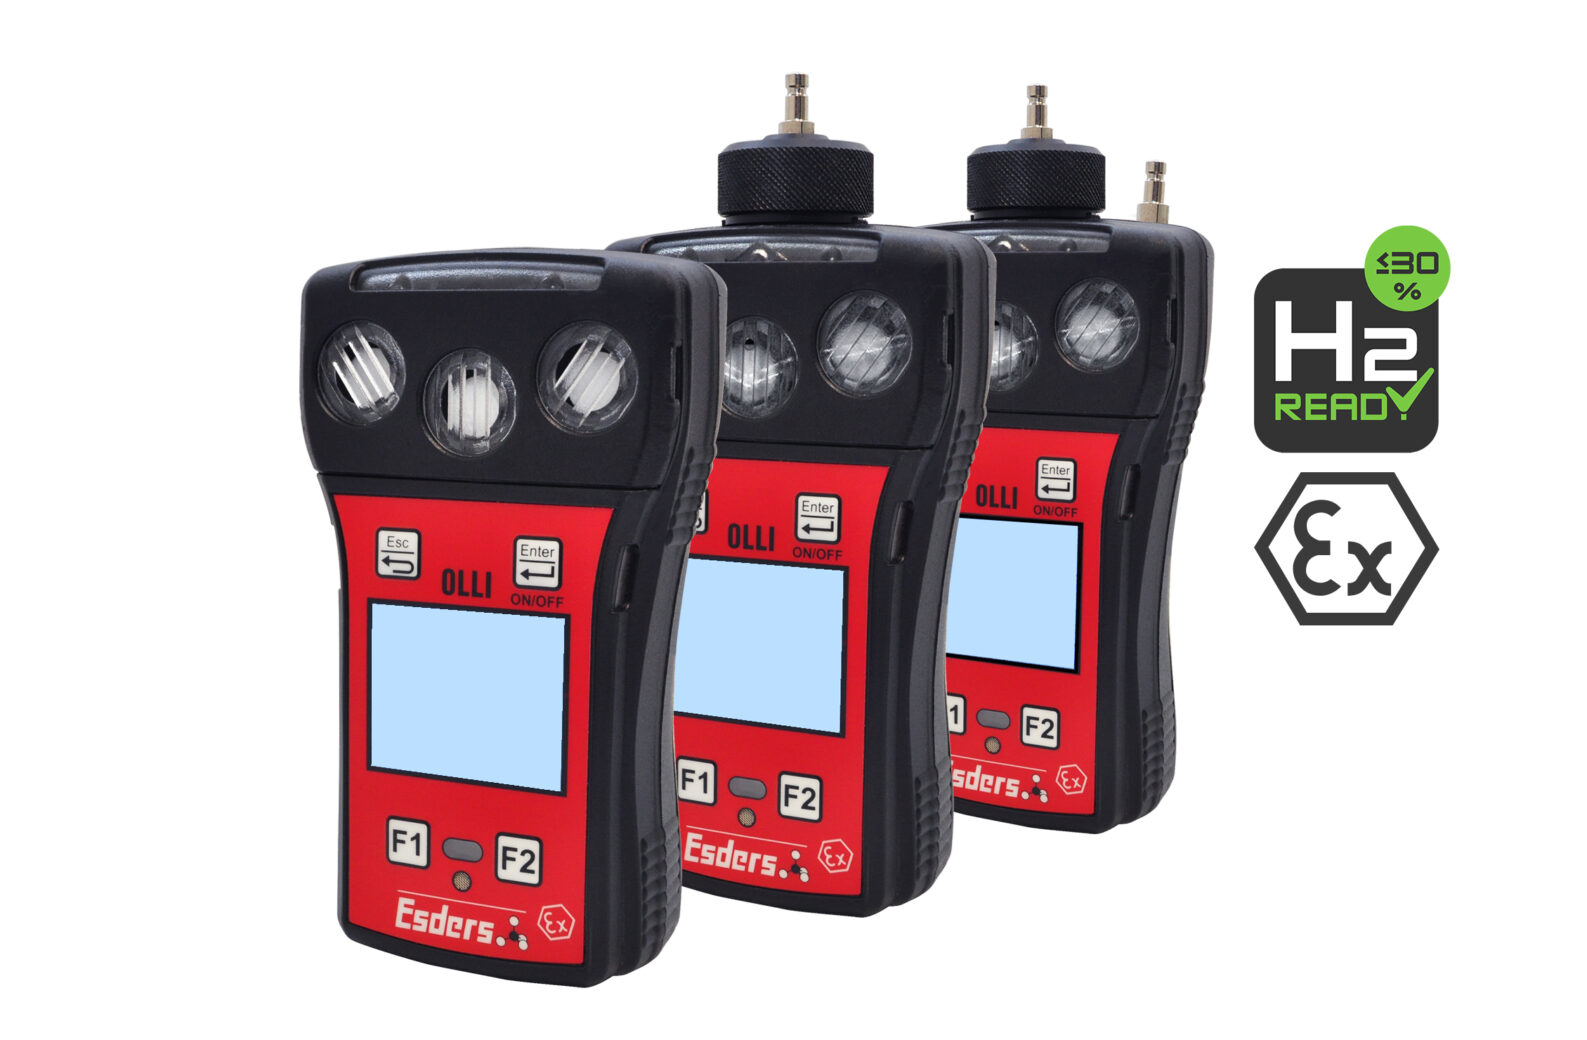 Unsere drei OLLI Freimessen Gasdetektoren auf weißem Untergrund. Mit Ex Logo und H2 ready Icon.